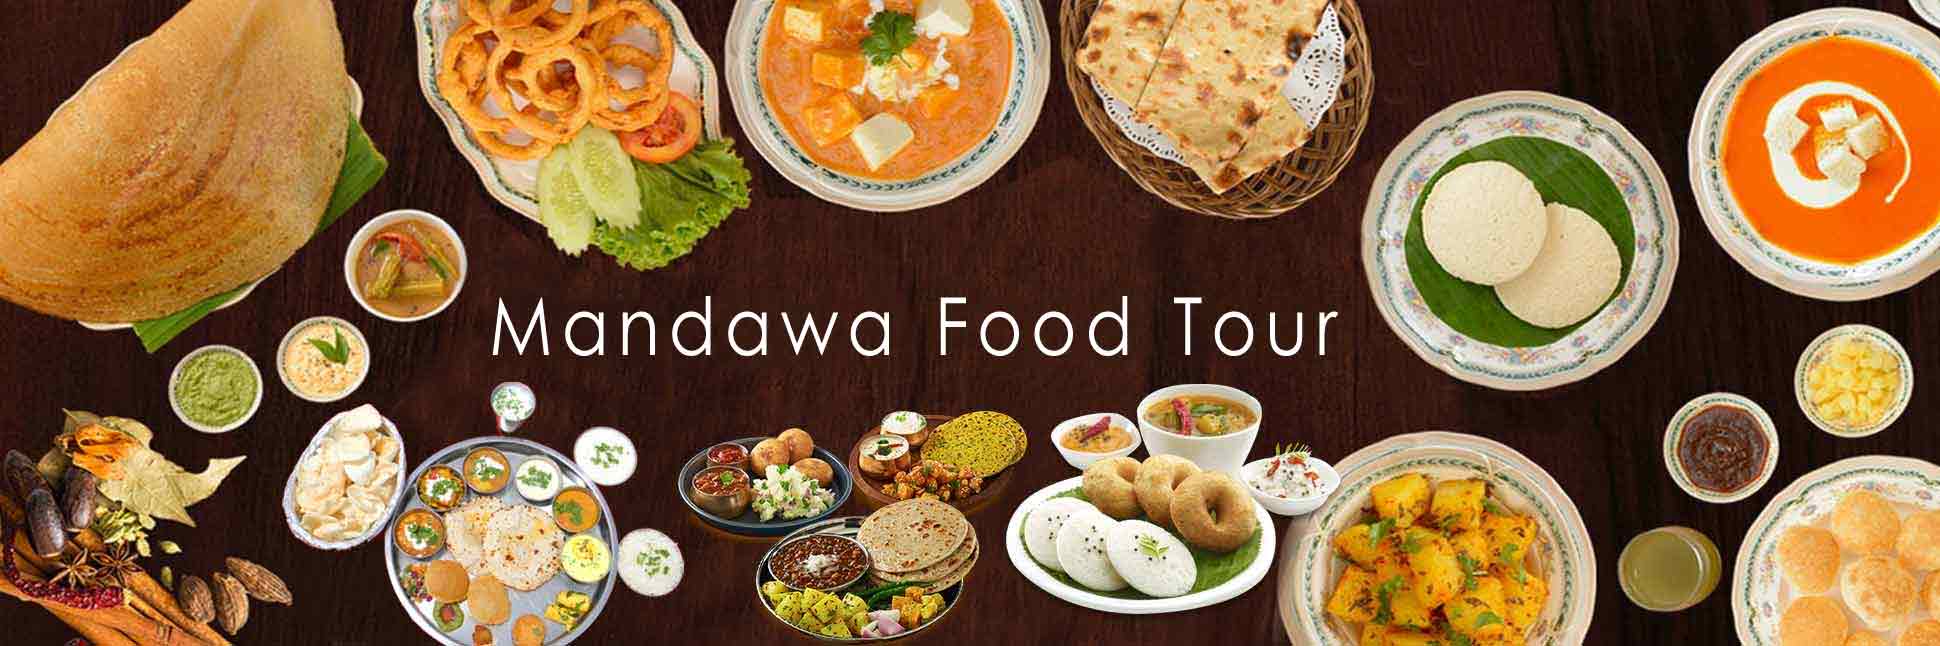 Mandawa Food Tour